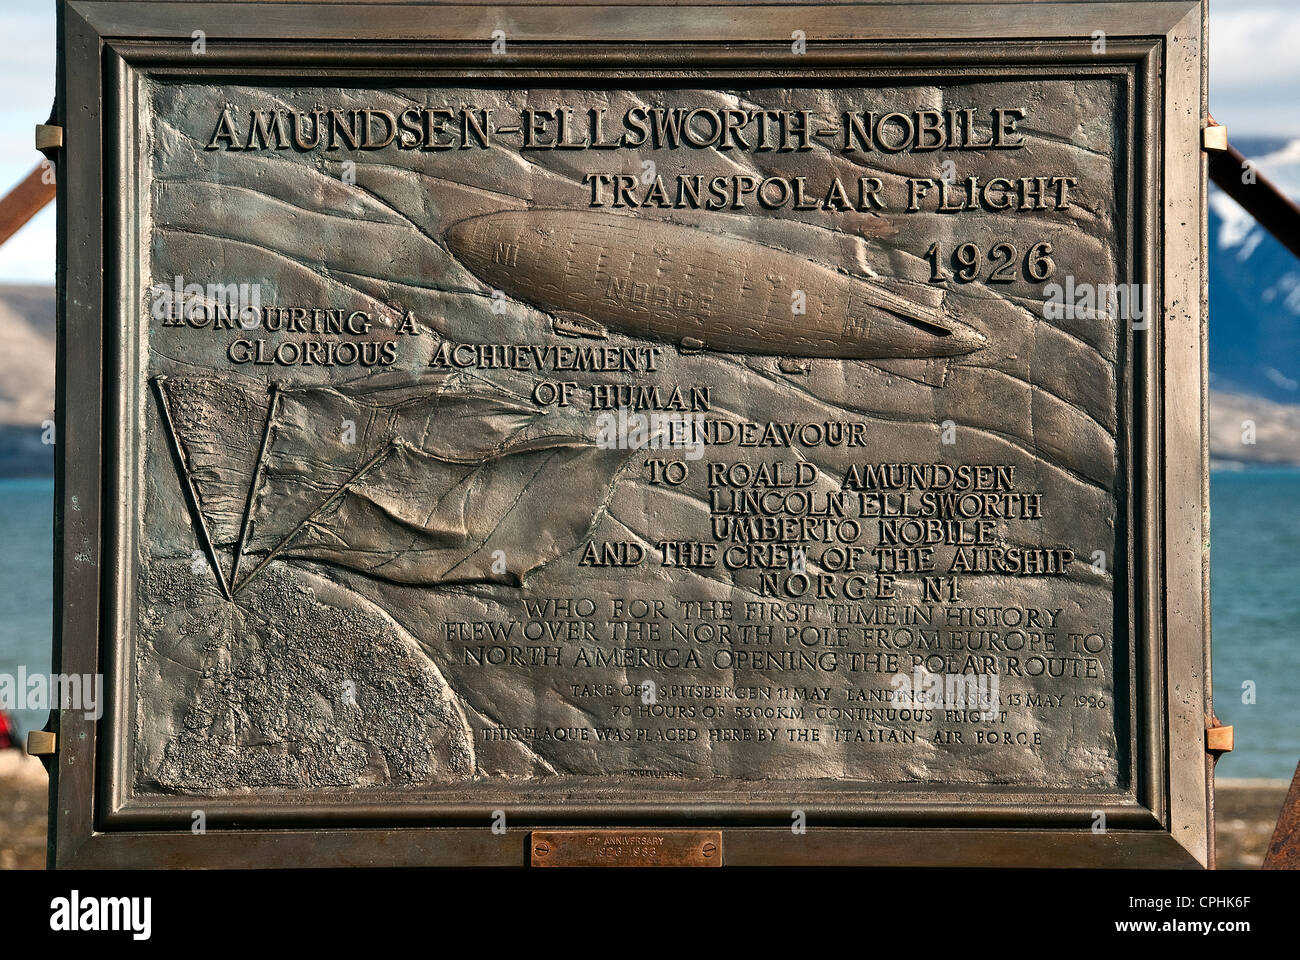 Amundsen-Ellsworth- Nobile Transpolar Flight 1926 Ny Ålesund Spitsbergen Norway Stock Photo